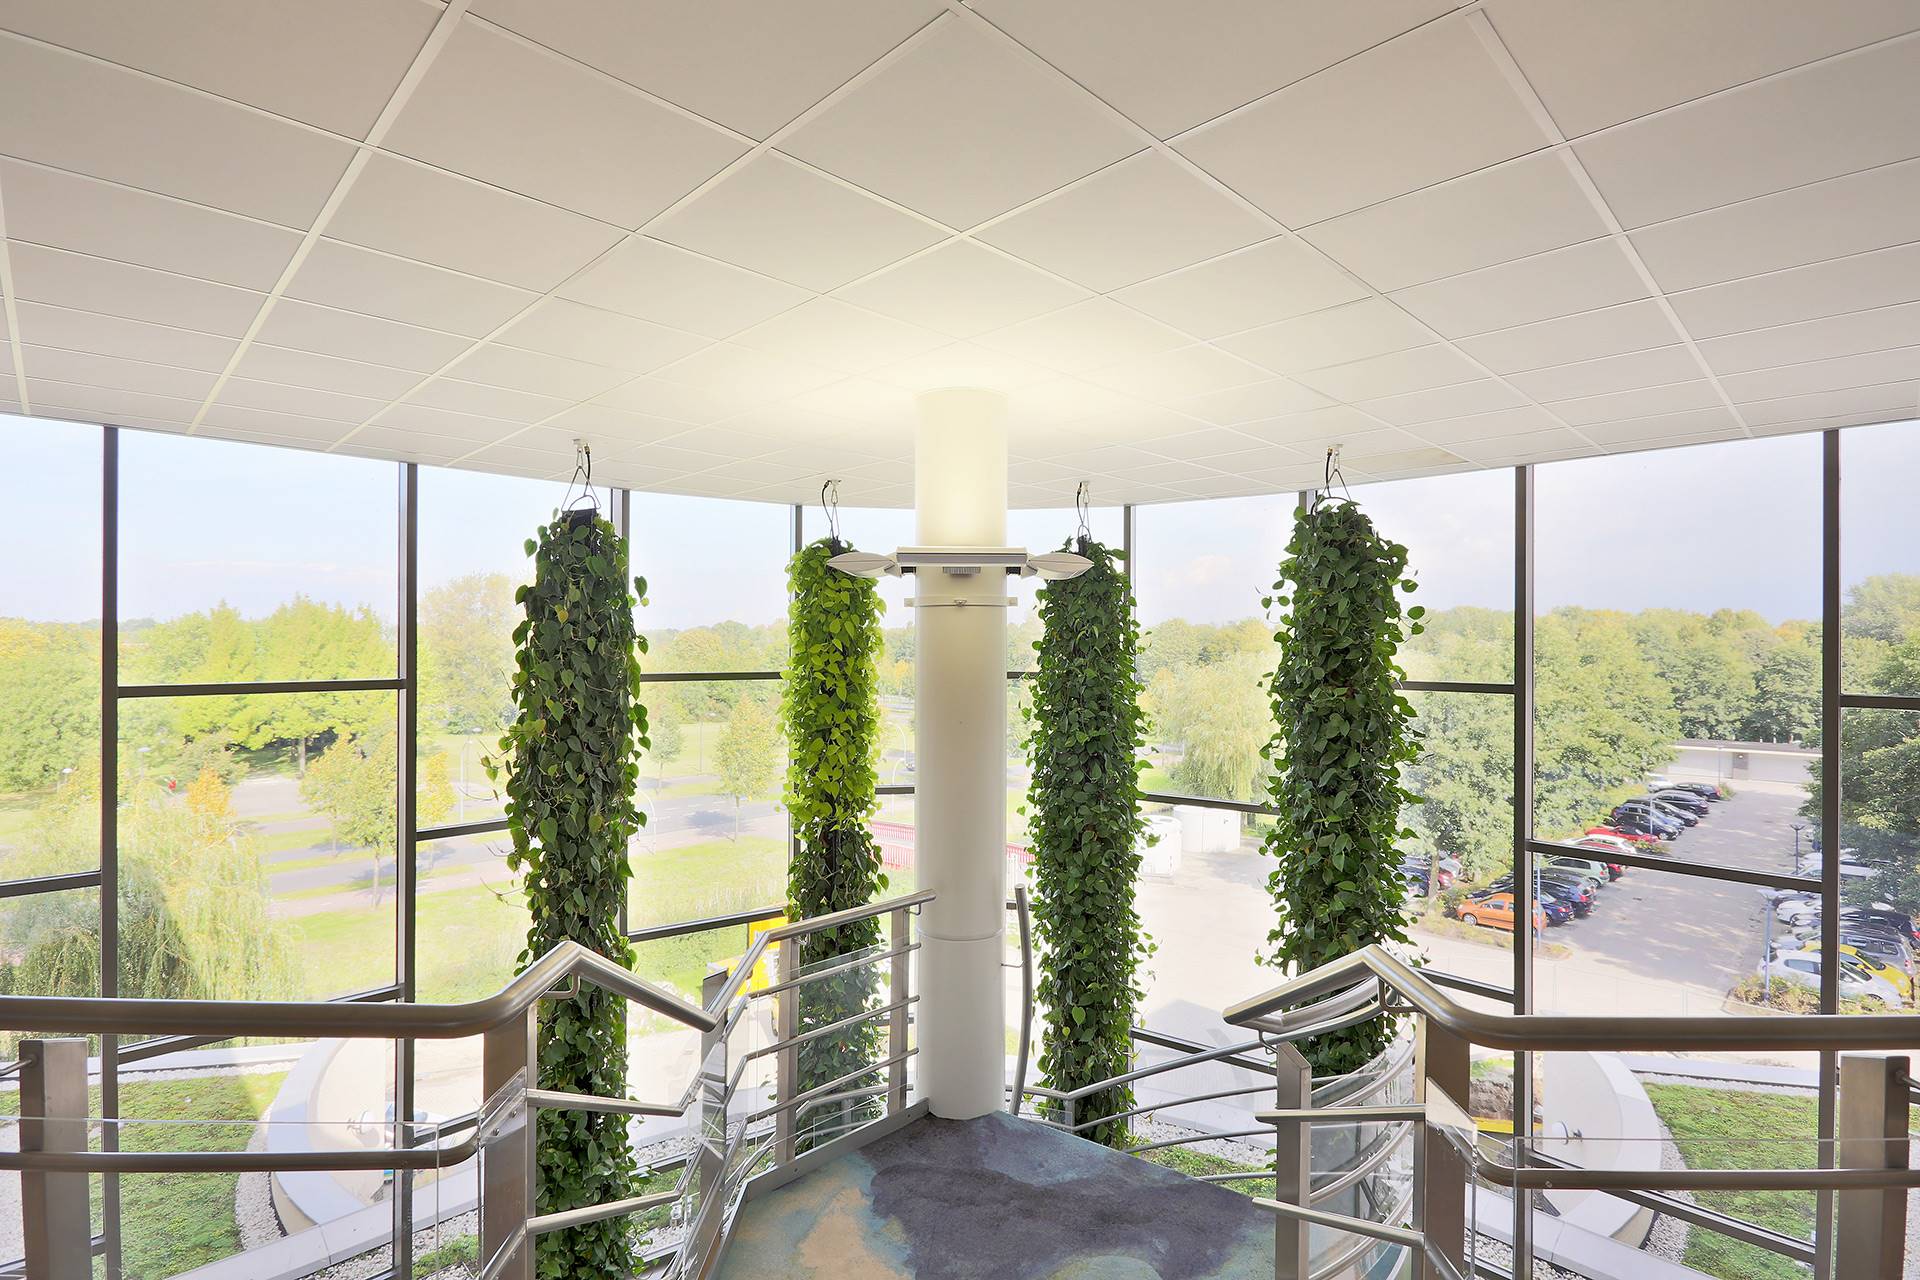 Deze plantstalagmite dient als verbindende factor tussen de verdiepingen van dit kantoor in Lelystad. 